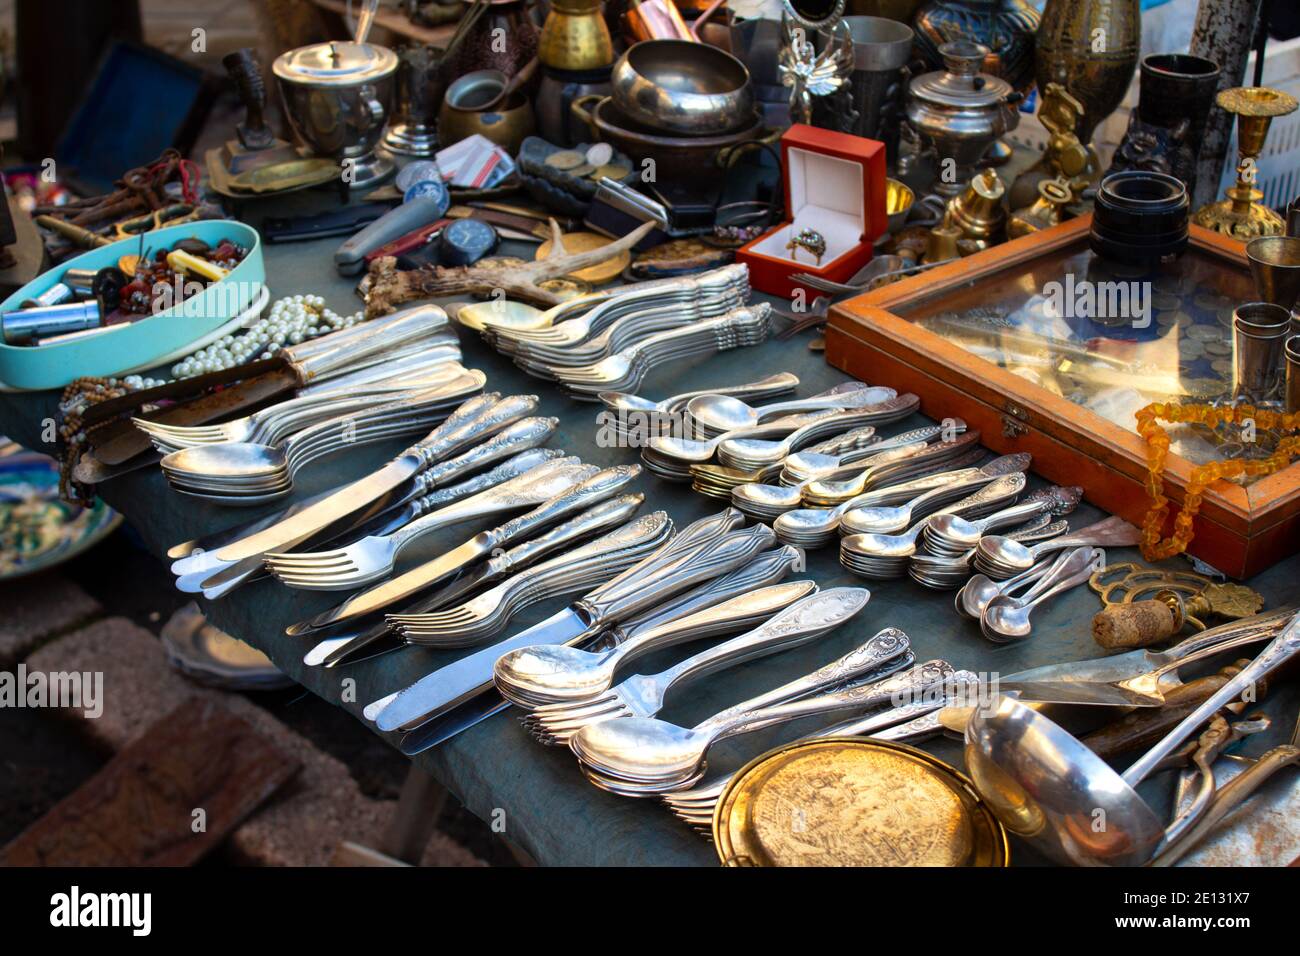 Antiquariato sul mercato delle pulci o festival, vecchia scultura d'argento vintage - cucchiai, coltelli, forchette, e altre cose d'epoca. Oggetti da collezione cimeli e garag Foto Stock